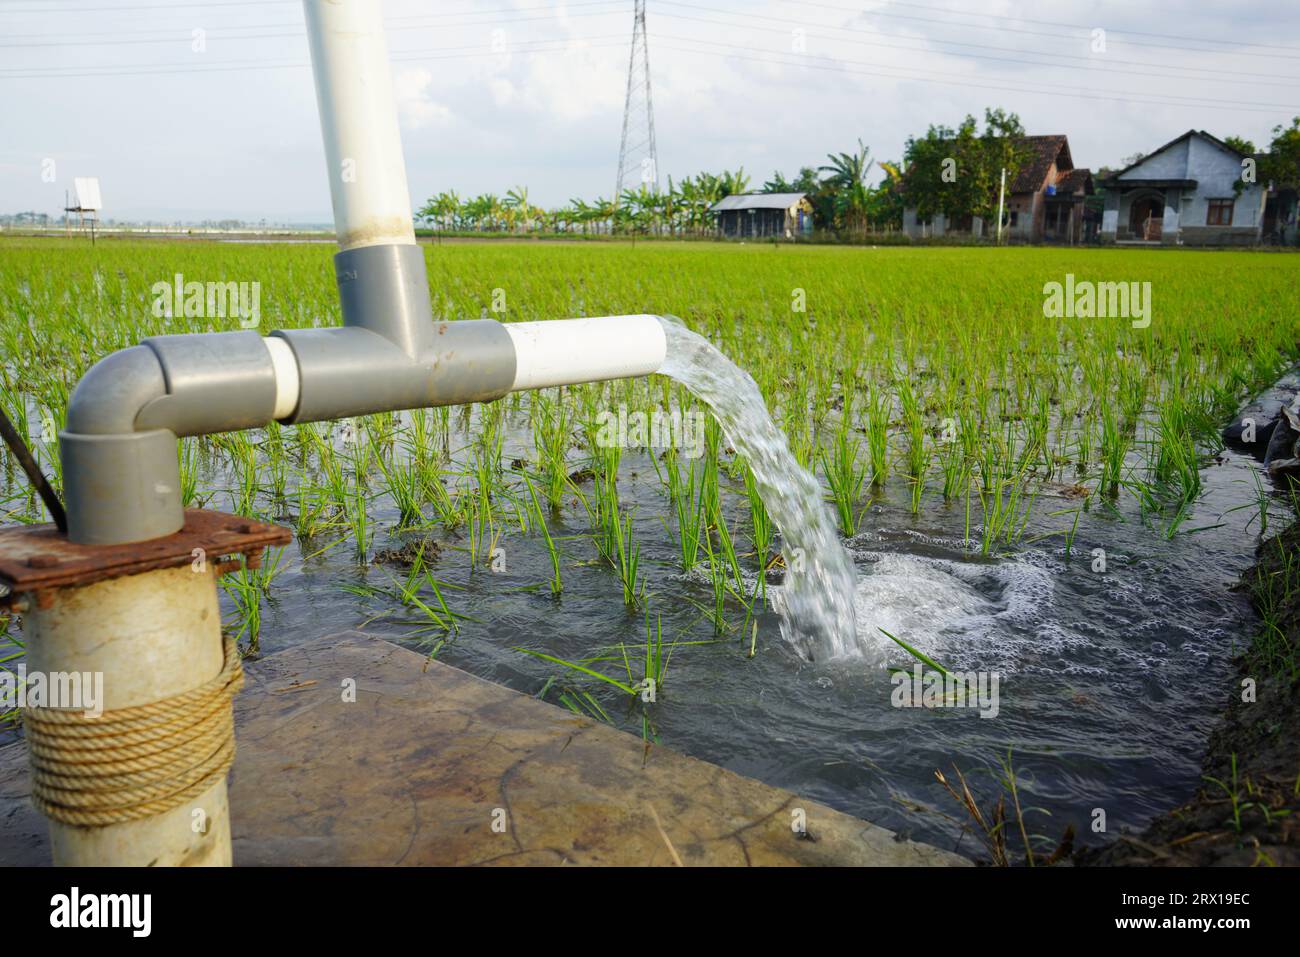 Les plants de blé sont irrigués par jet d'eau. Irrigation des rizières à l'aide de puits de pompage avec la technique de pompage de l'eau du sol pour couler Banque D'Images